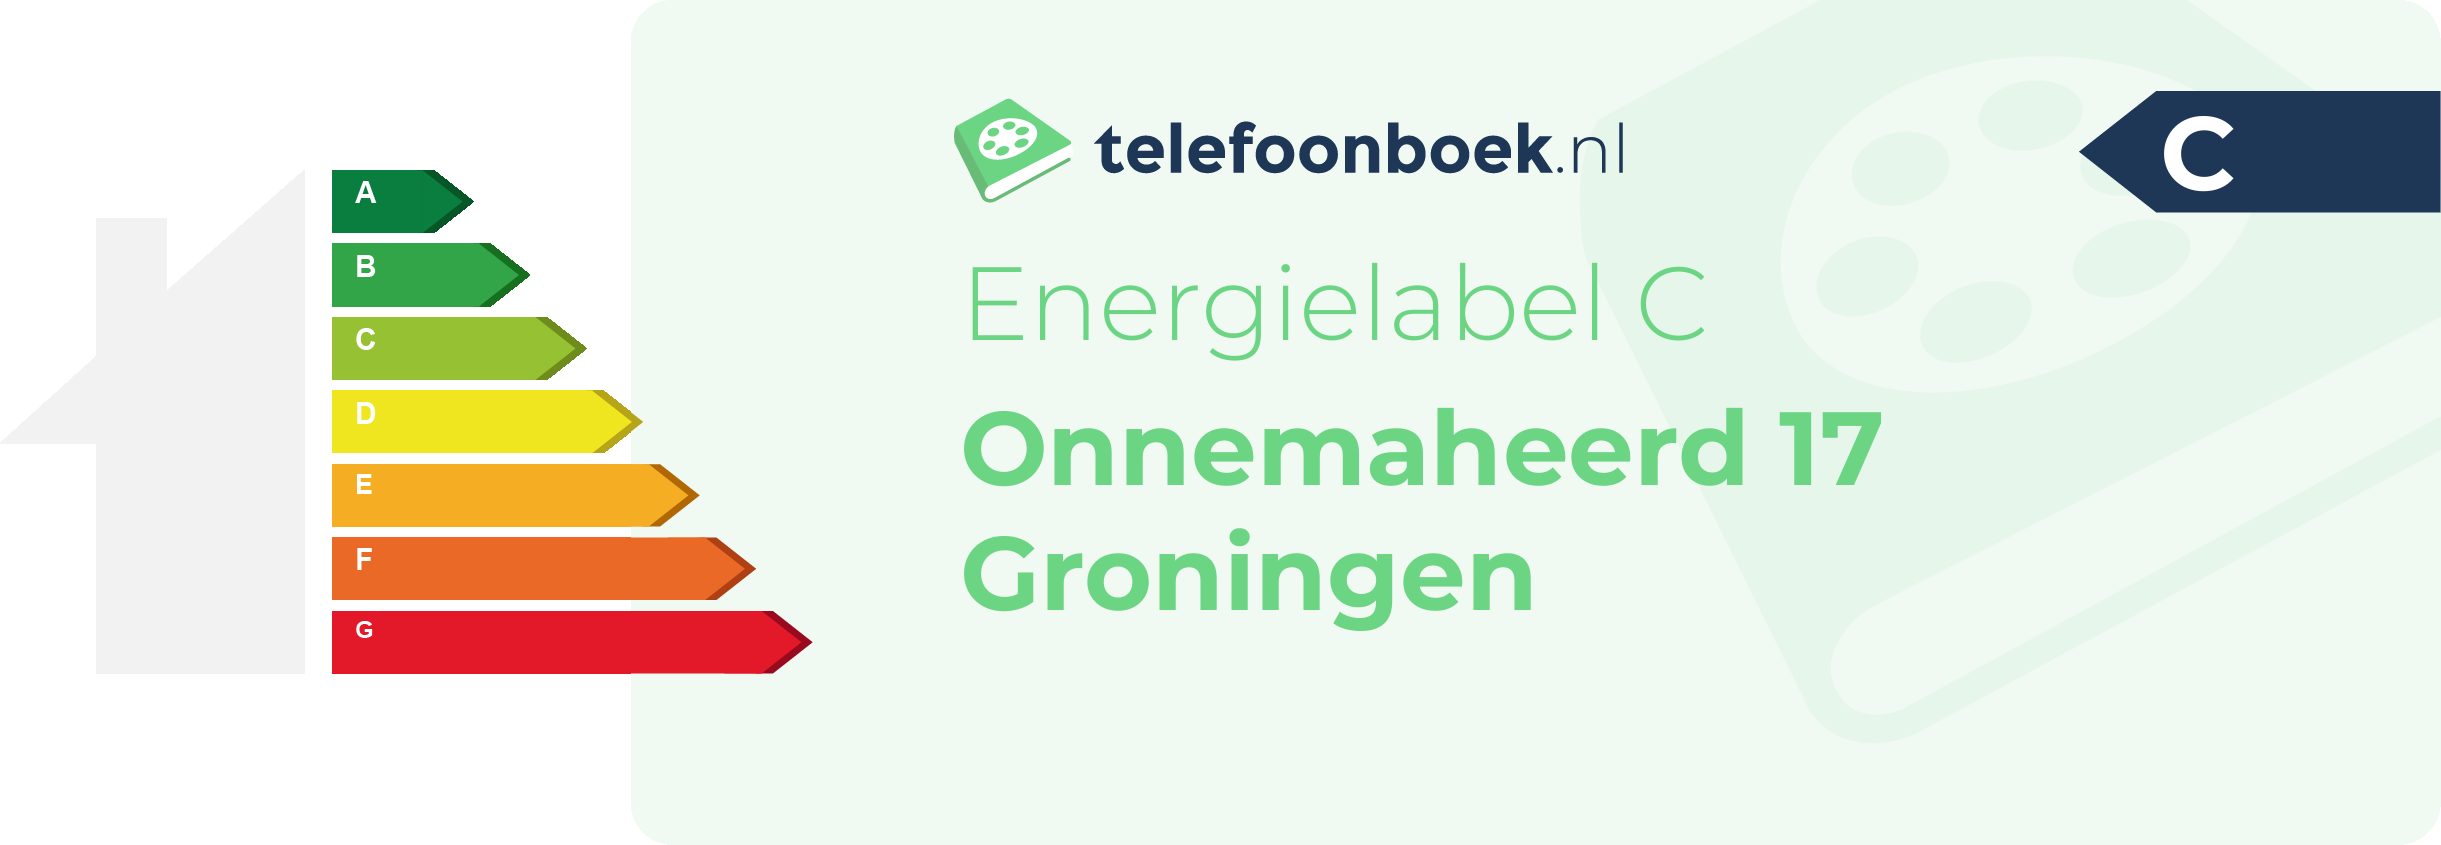 Energielabel Onnemaheerd 17 Groningen